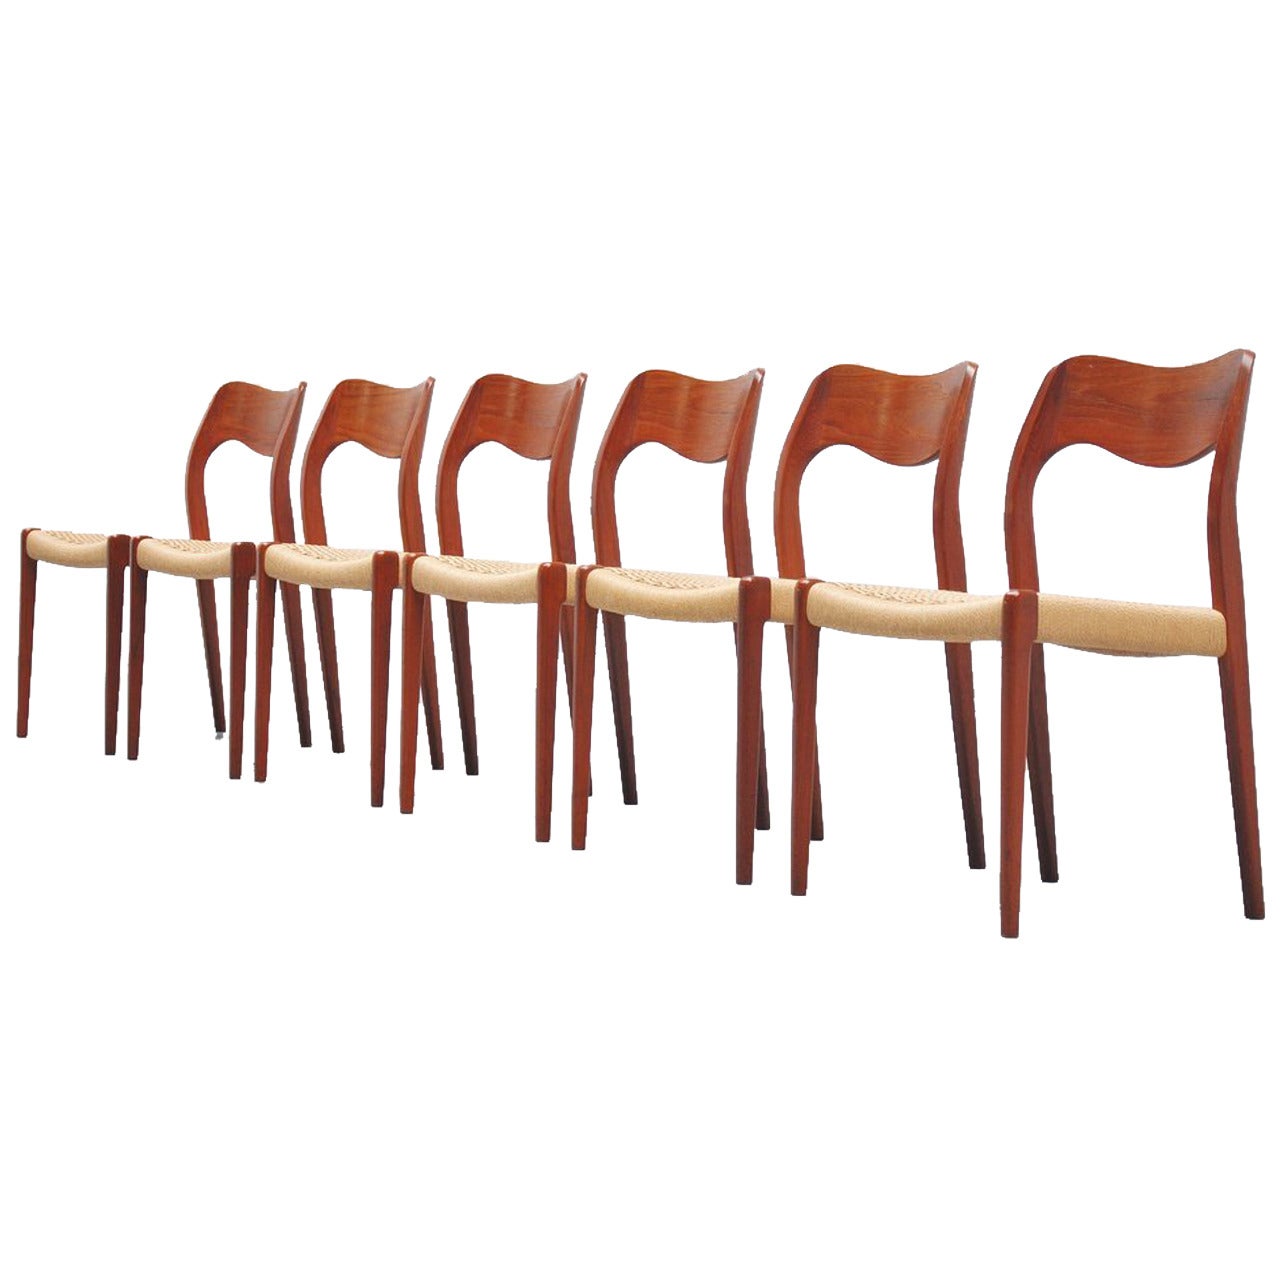 Niels Møller Dining Chairs, Model 71 in Teak, Denmark 1951